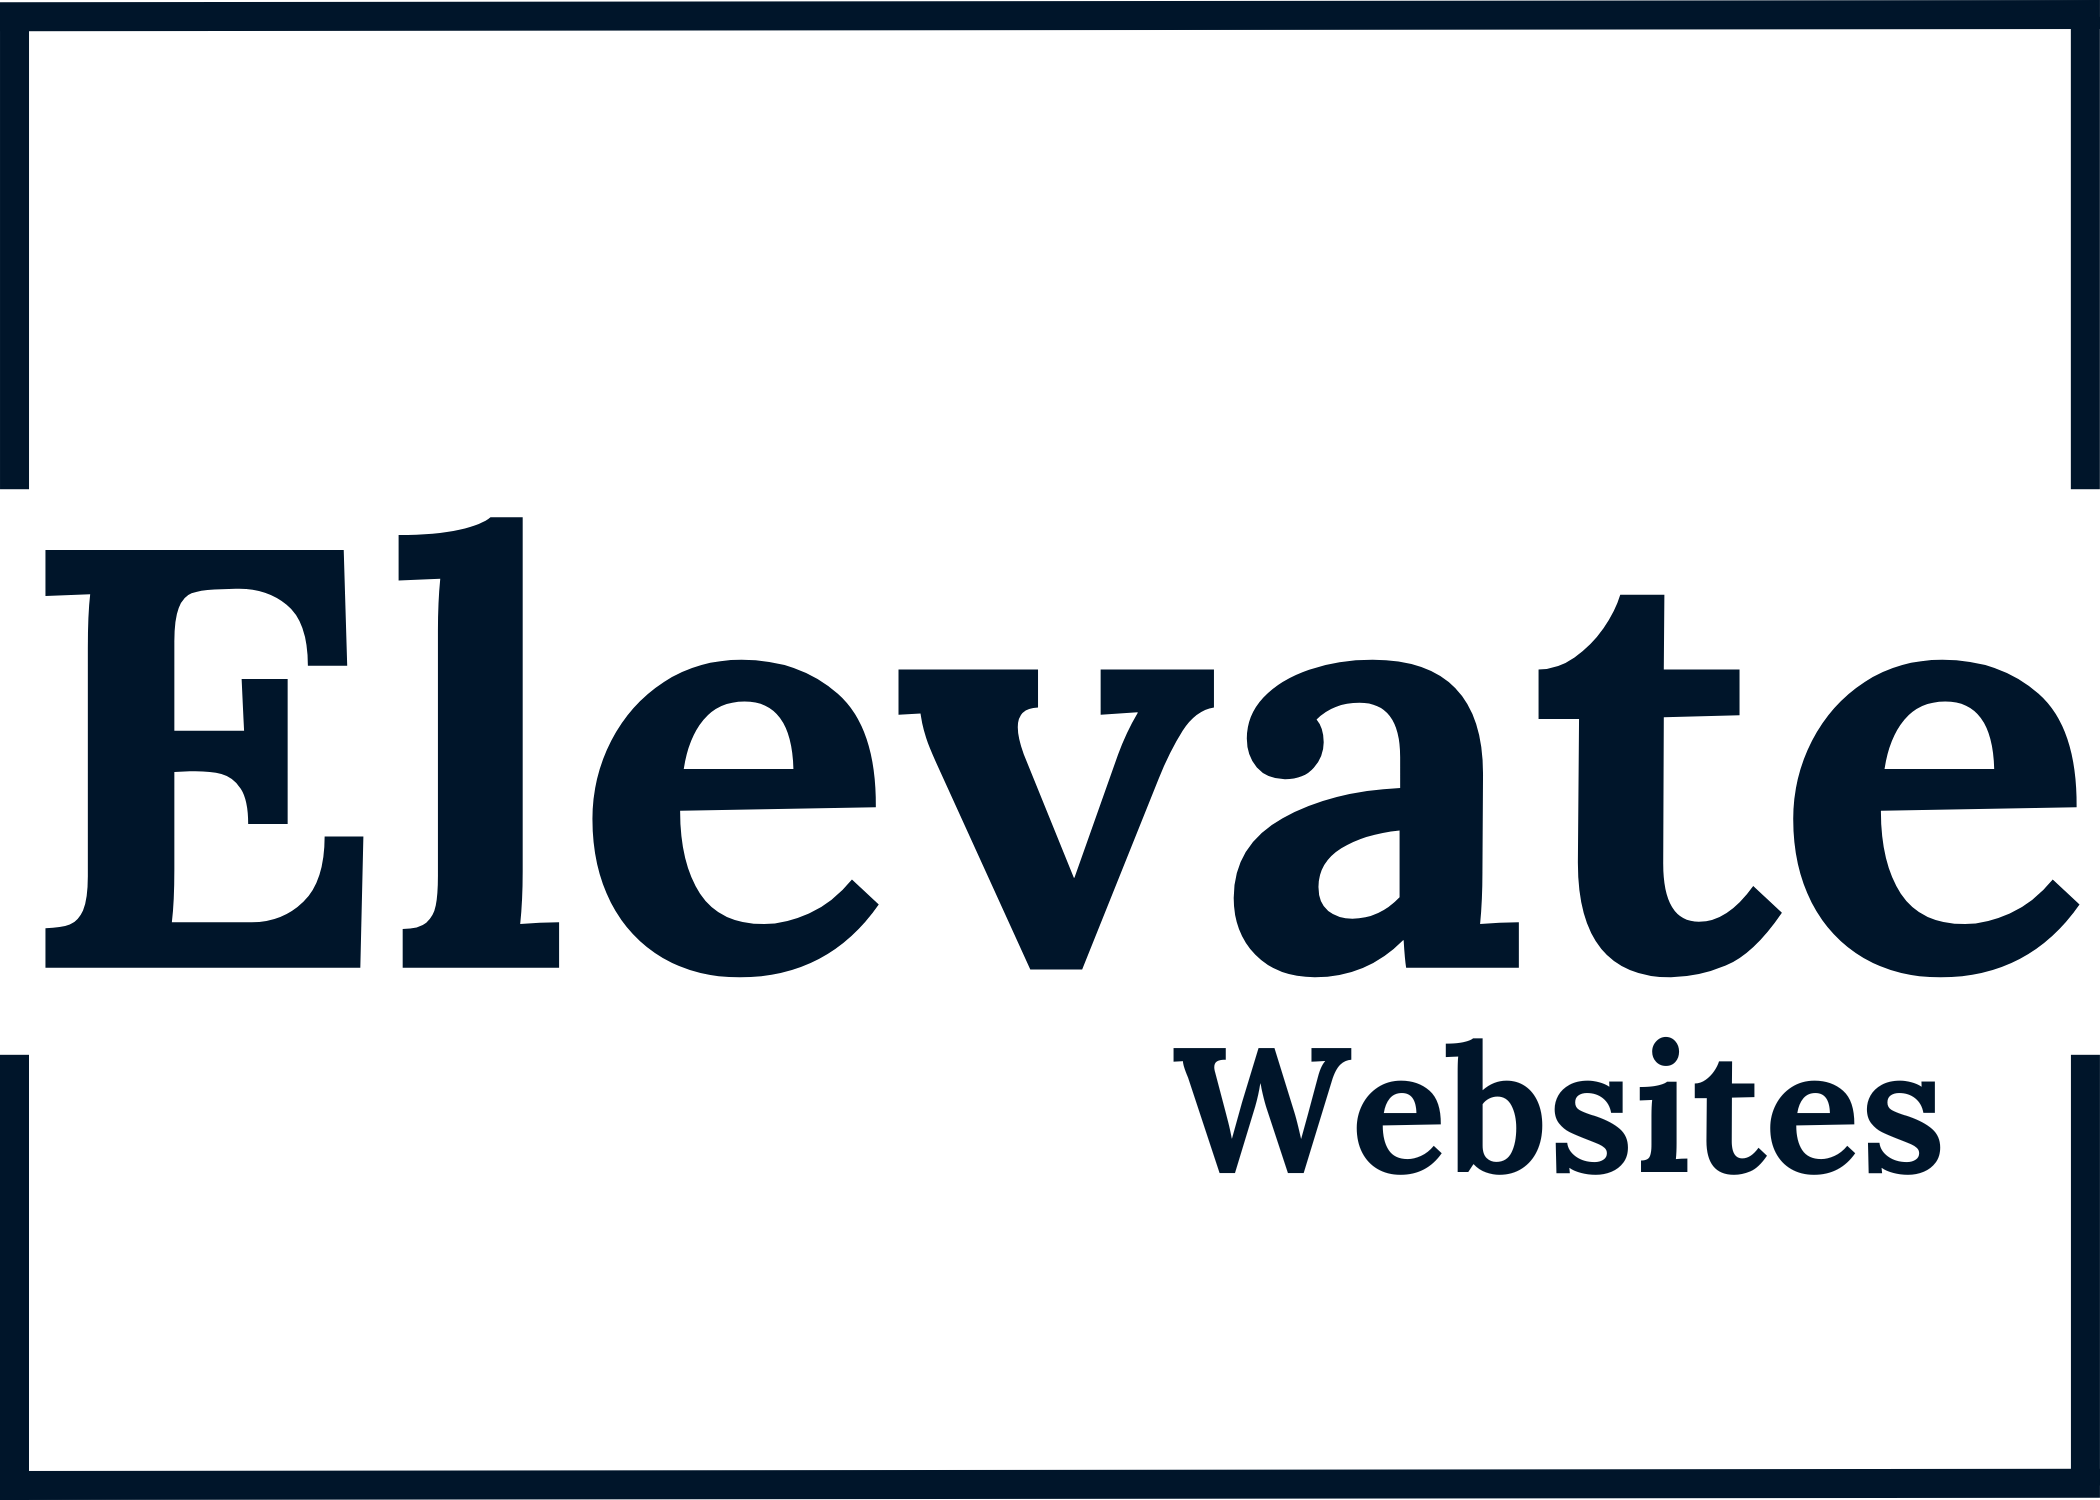 Elevate Websites